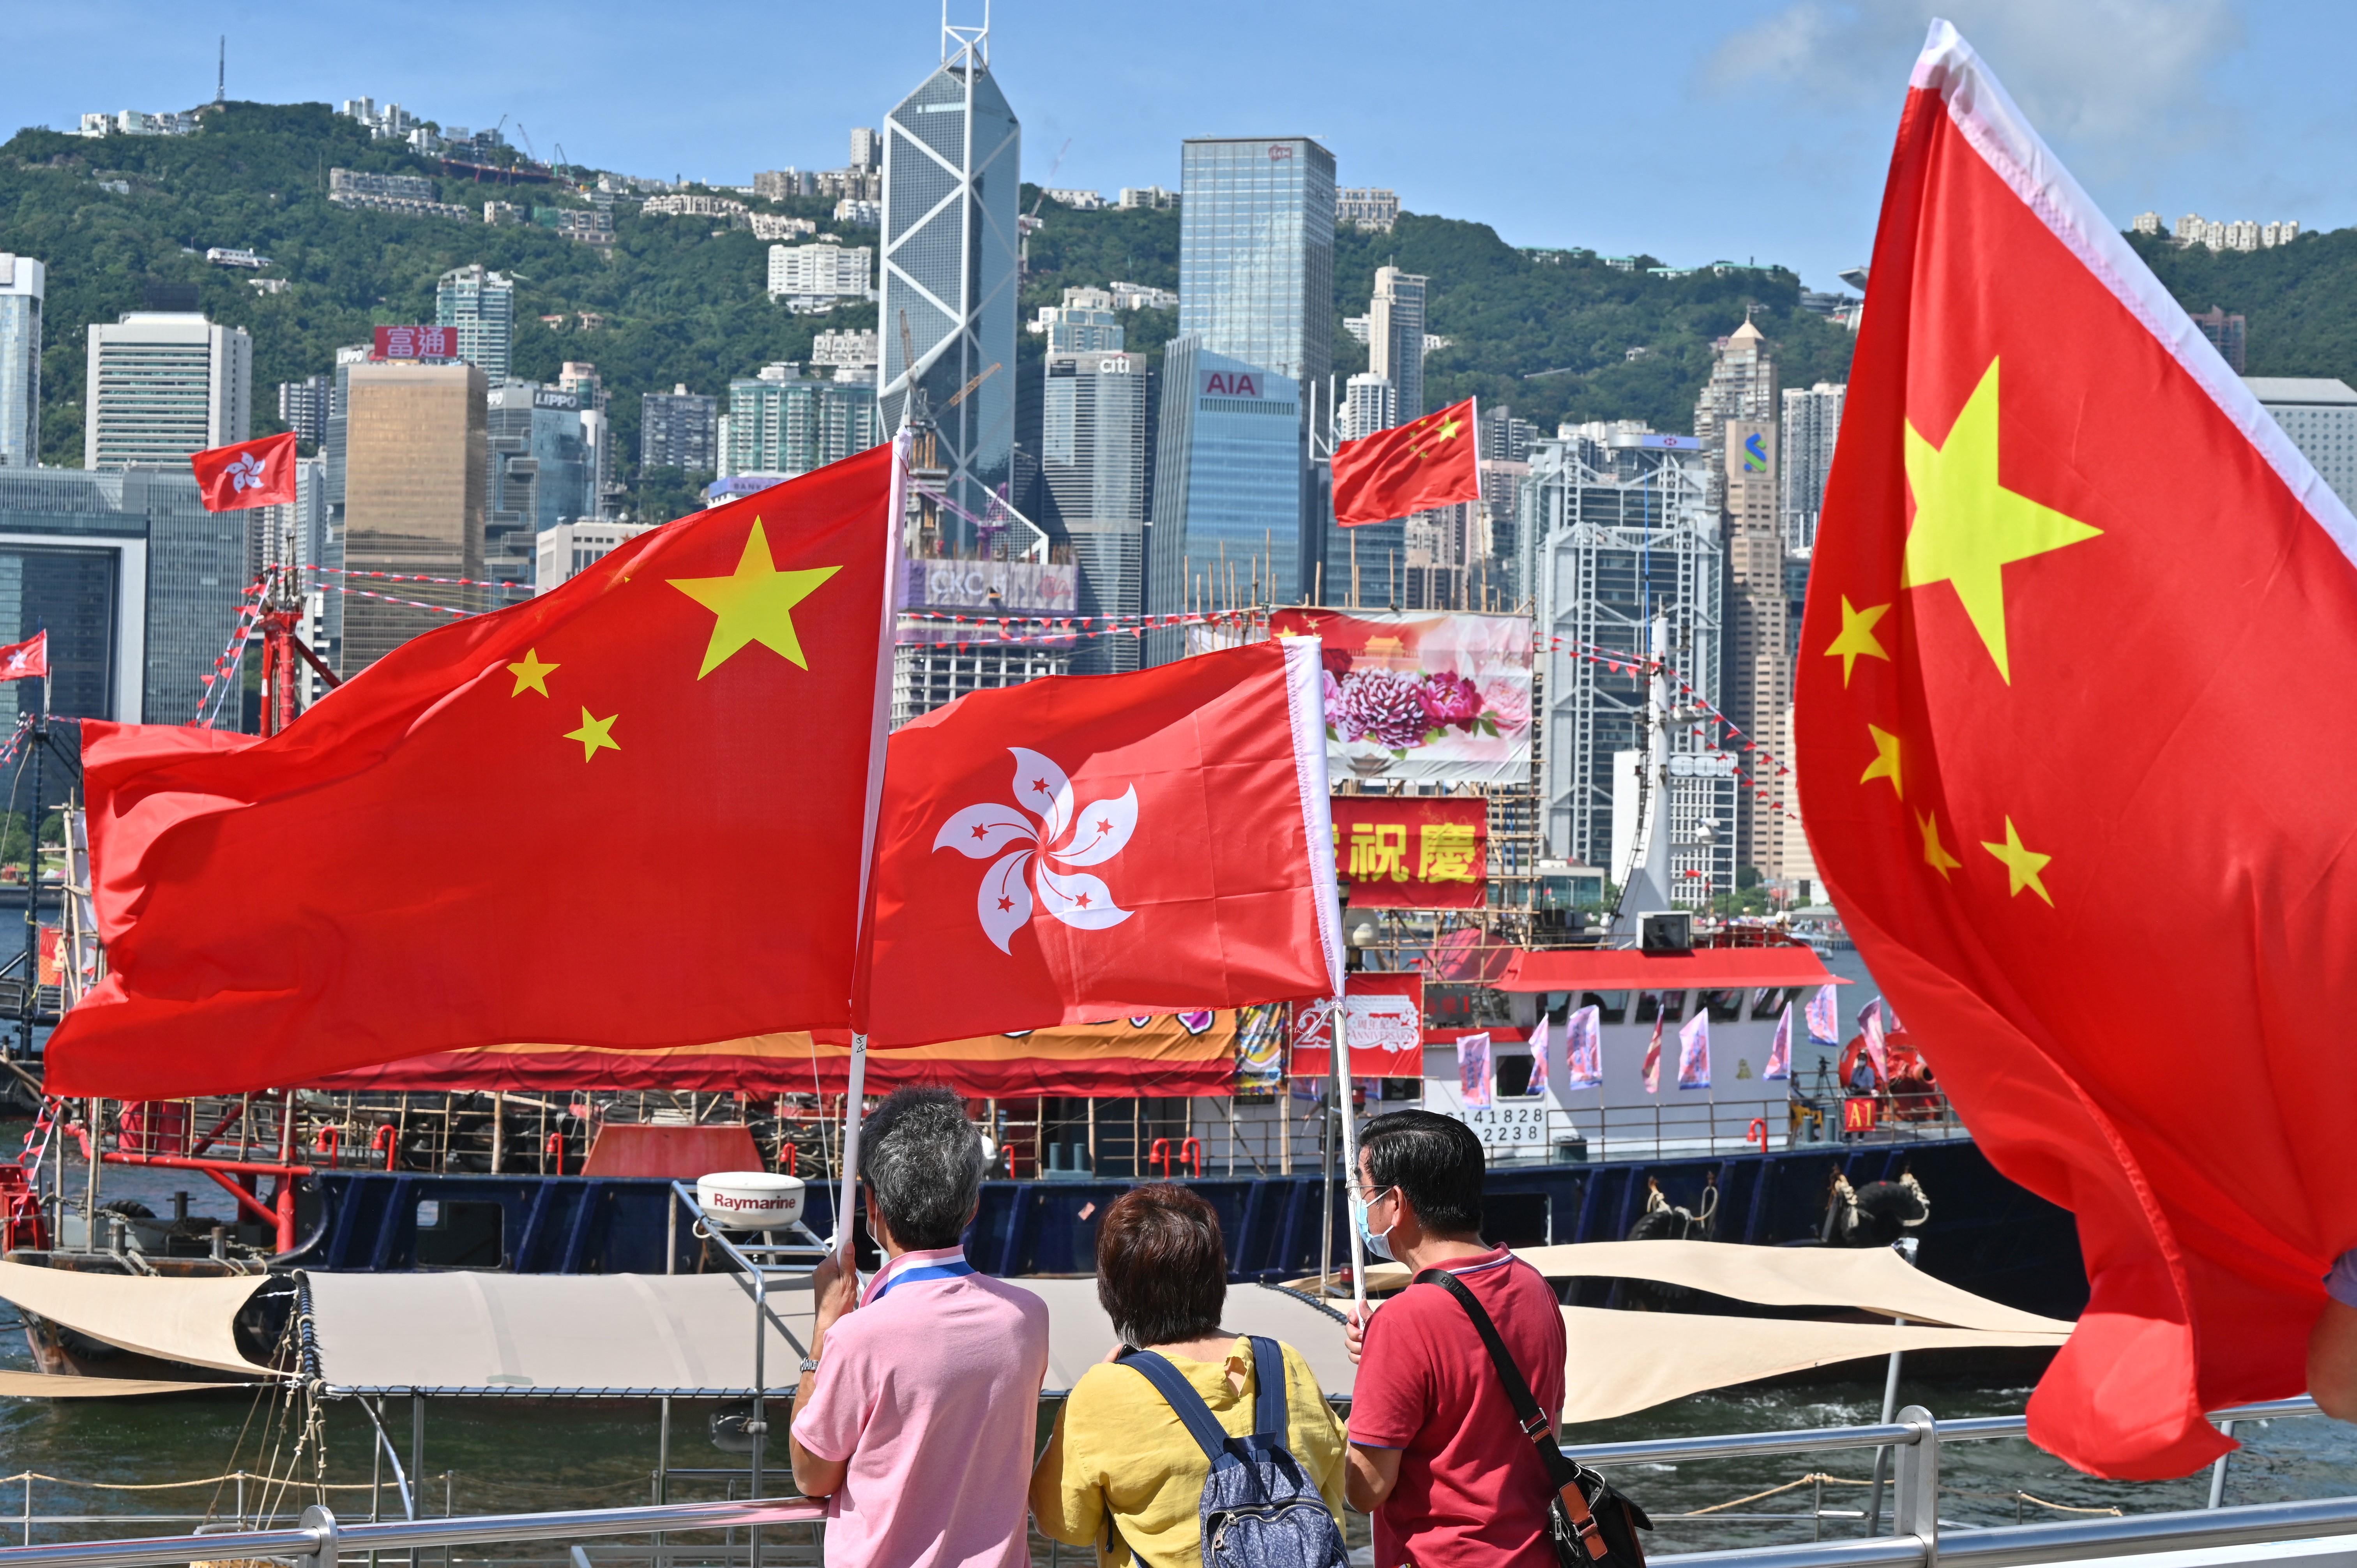 Hồng Kông là một đô thị phát triển và đầy sức sống, với nền kinh tế đa dạng và một dòng chảy văn hóa sôi động. Tương lai của Hồng Kông càng trở nên hấp dẫn hơn khi đất nước này trở thành cầu nối giữa Trung Quốc và thế giới. Khám phá hình ảnh liên quan để tìm hiểu thêm về Hồng Kông và tương lai thú vị của nó.